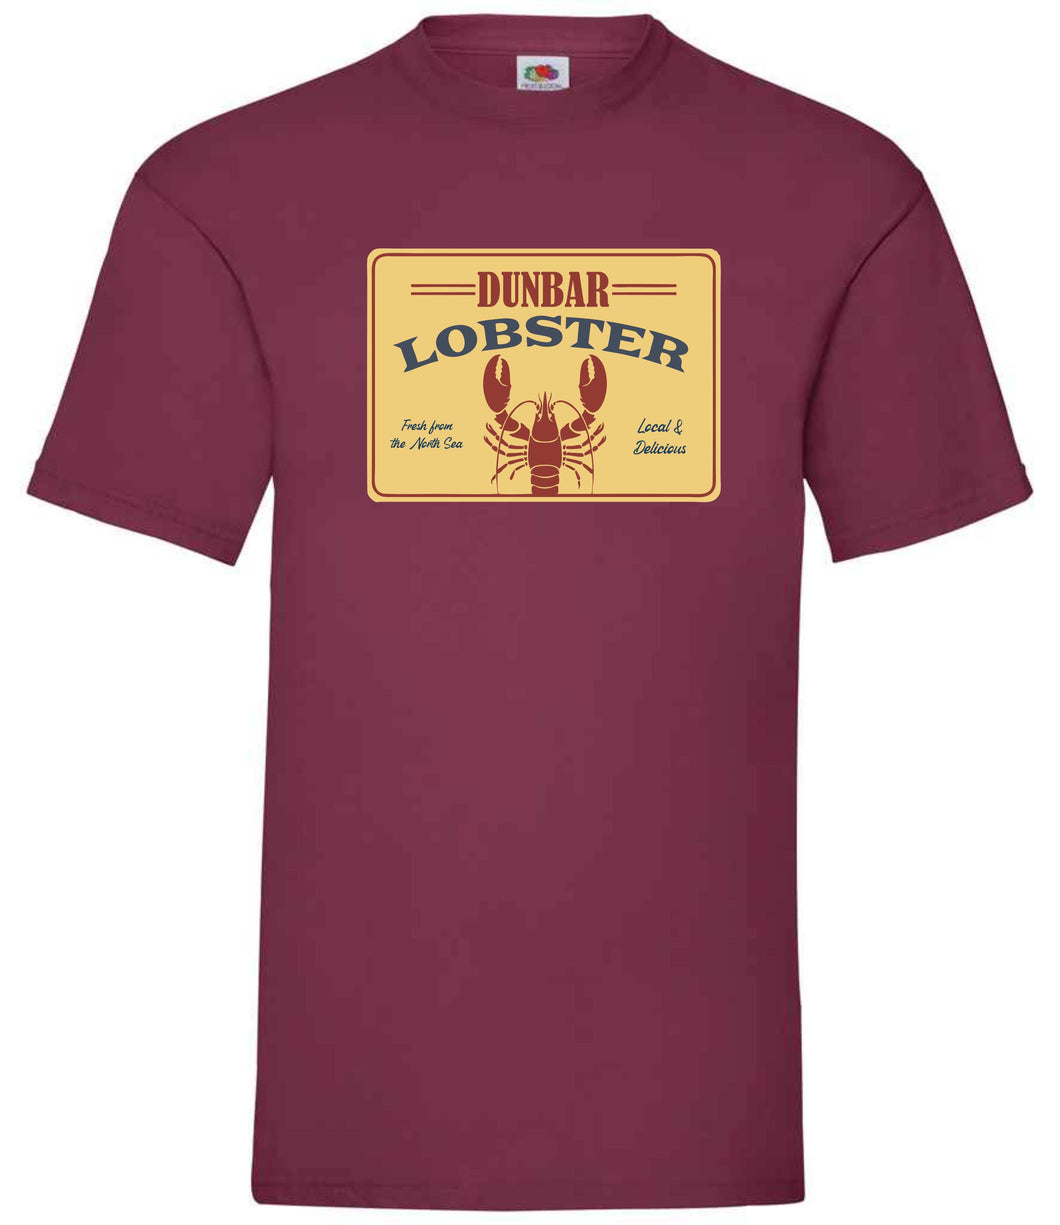 Dunbar Lobster T-Shirt